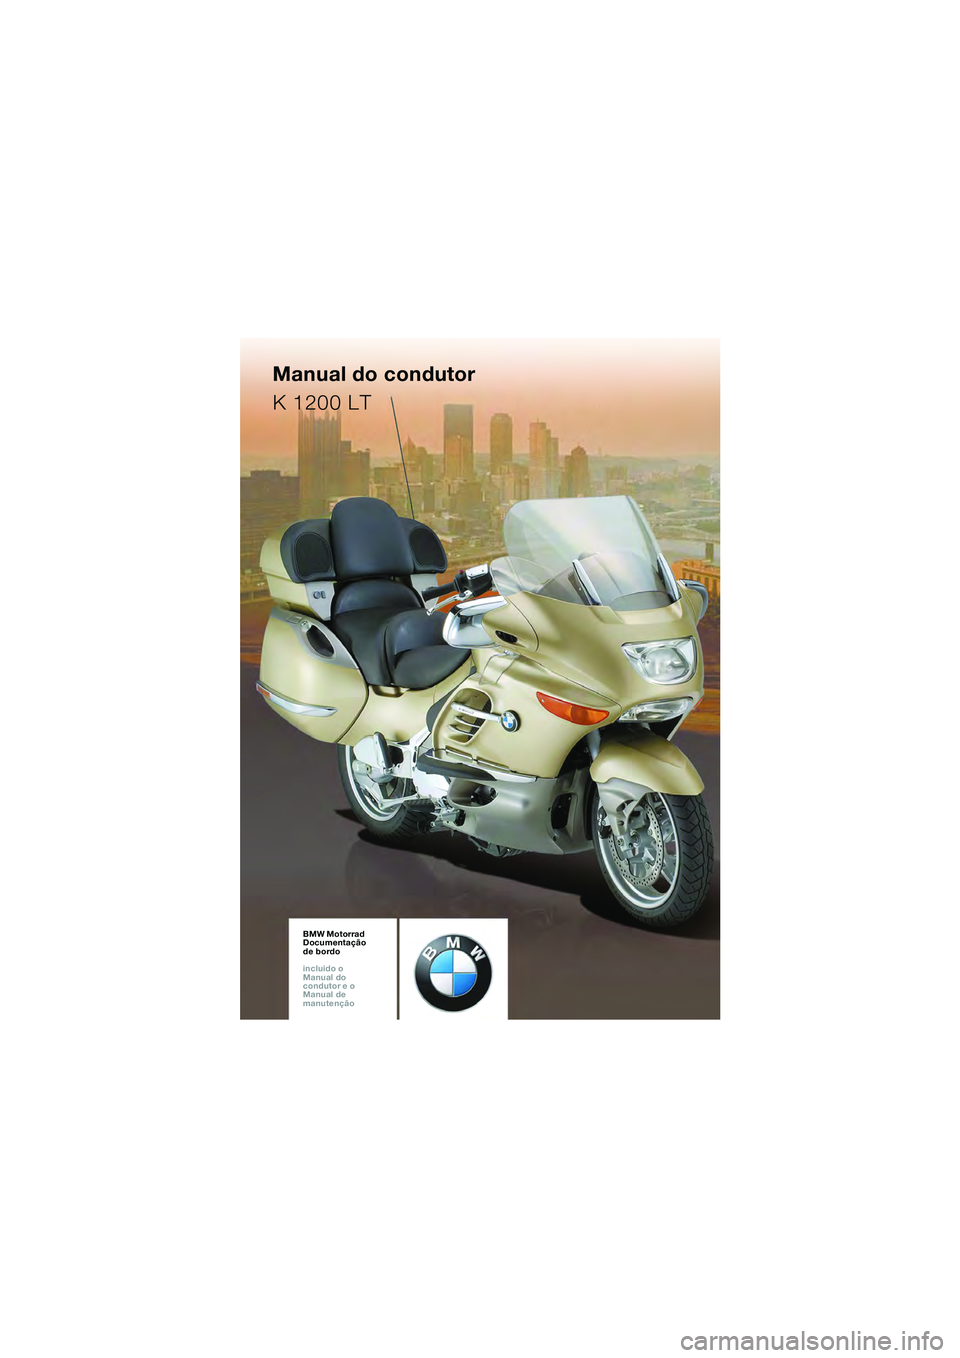 BMW MOTORRAD K 1200 LT 2005  Manual do condutor (in Portuguese) BMW Motorrad
Documentação 
de bordo
incluido o  
Manual do  
Proprietário e o  
Instruções para  
a manutençãoBMW Motorrad
Documentação 
de bordo
incluido o  
Manual do  
Proprietário e o  
